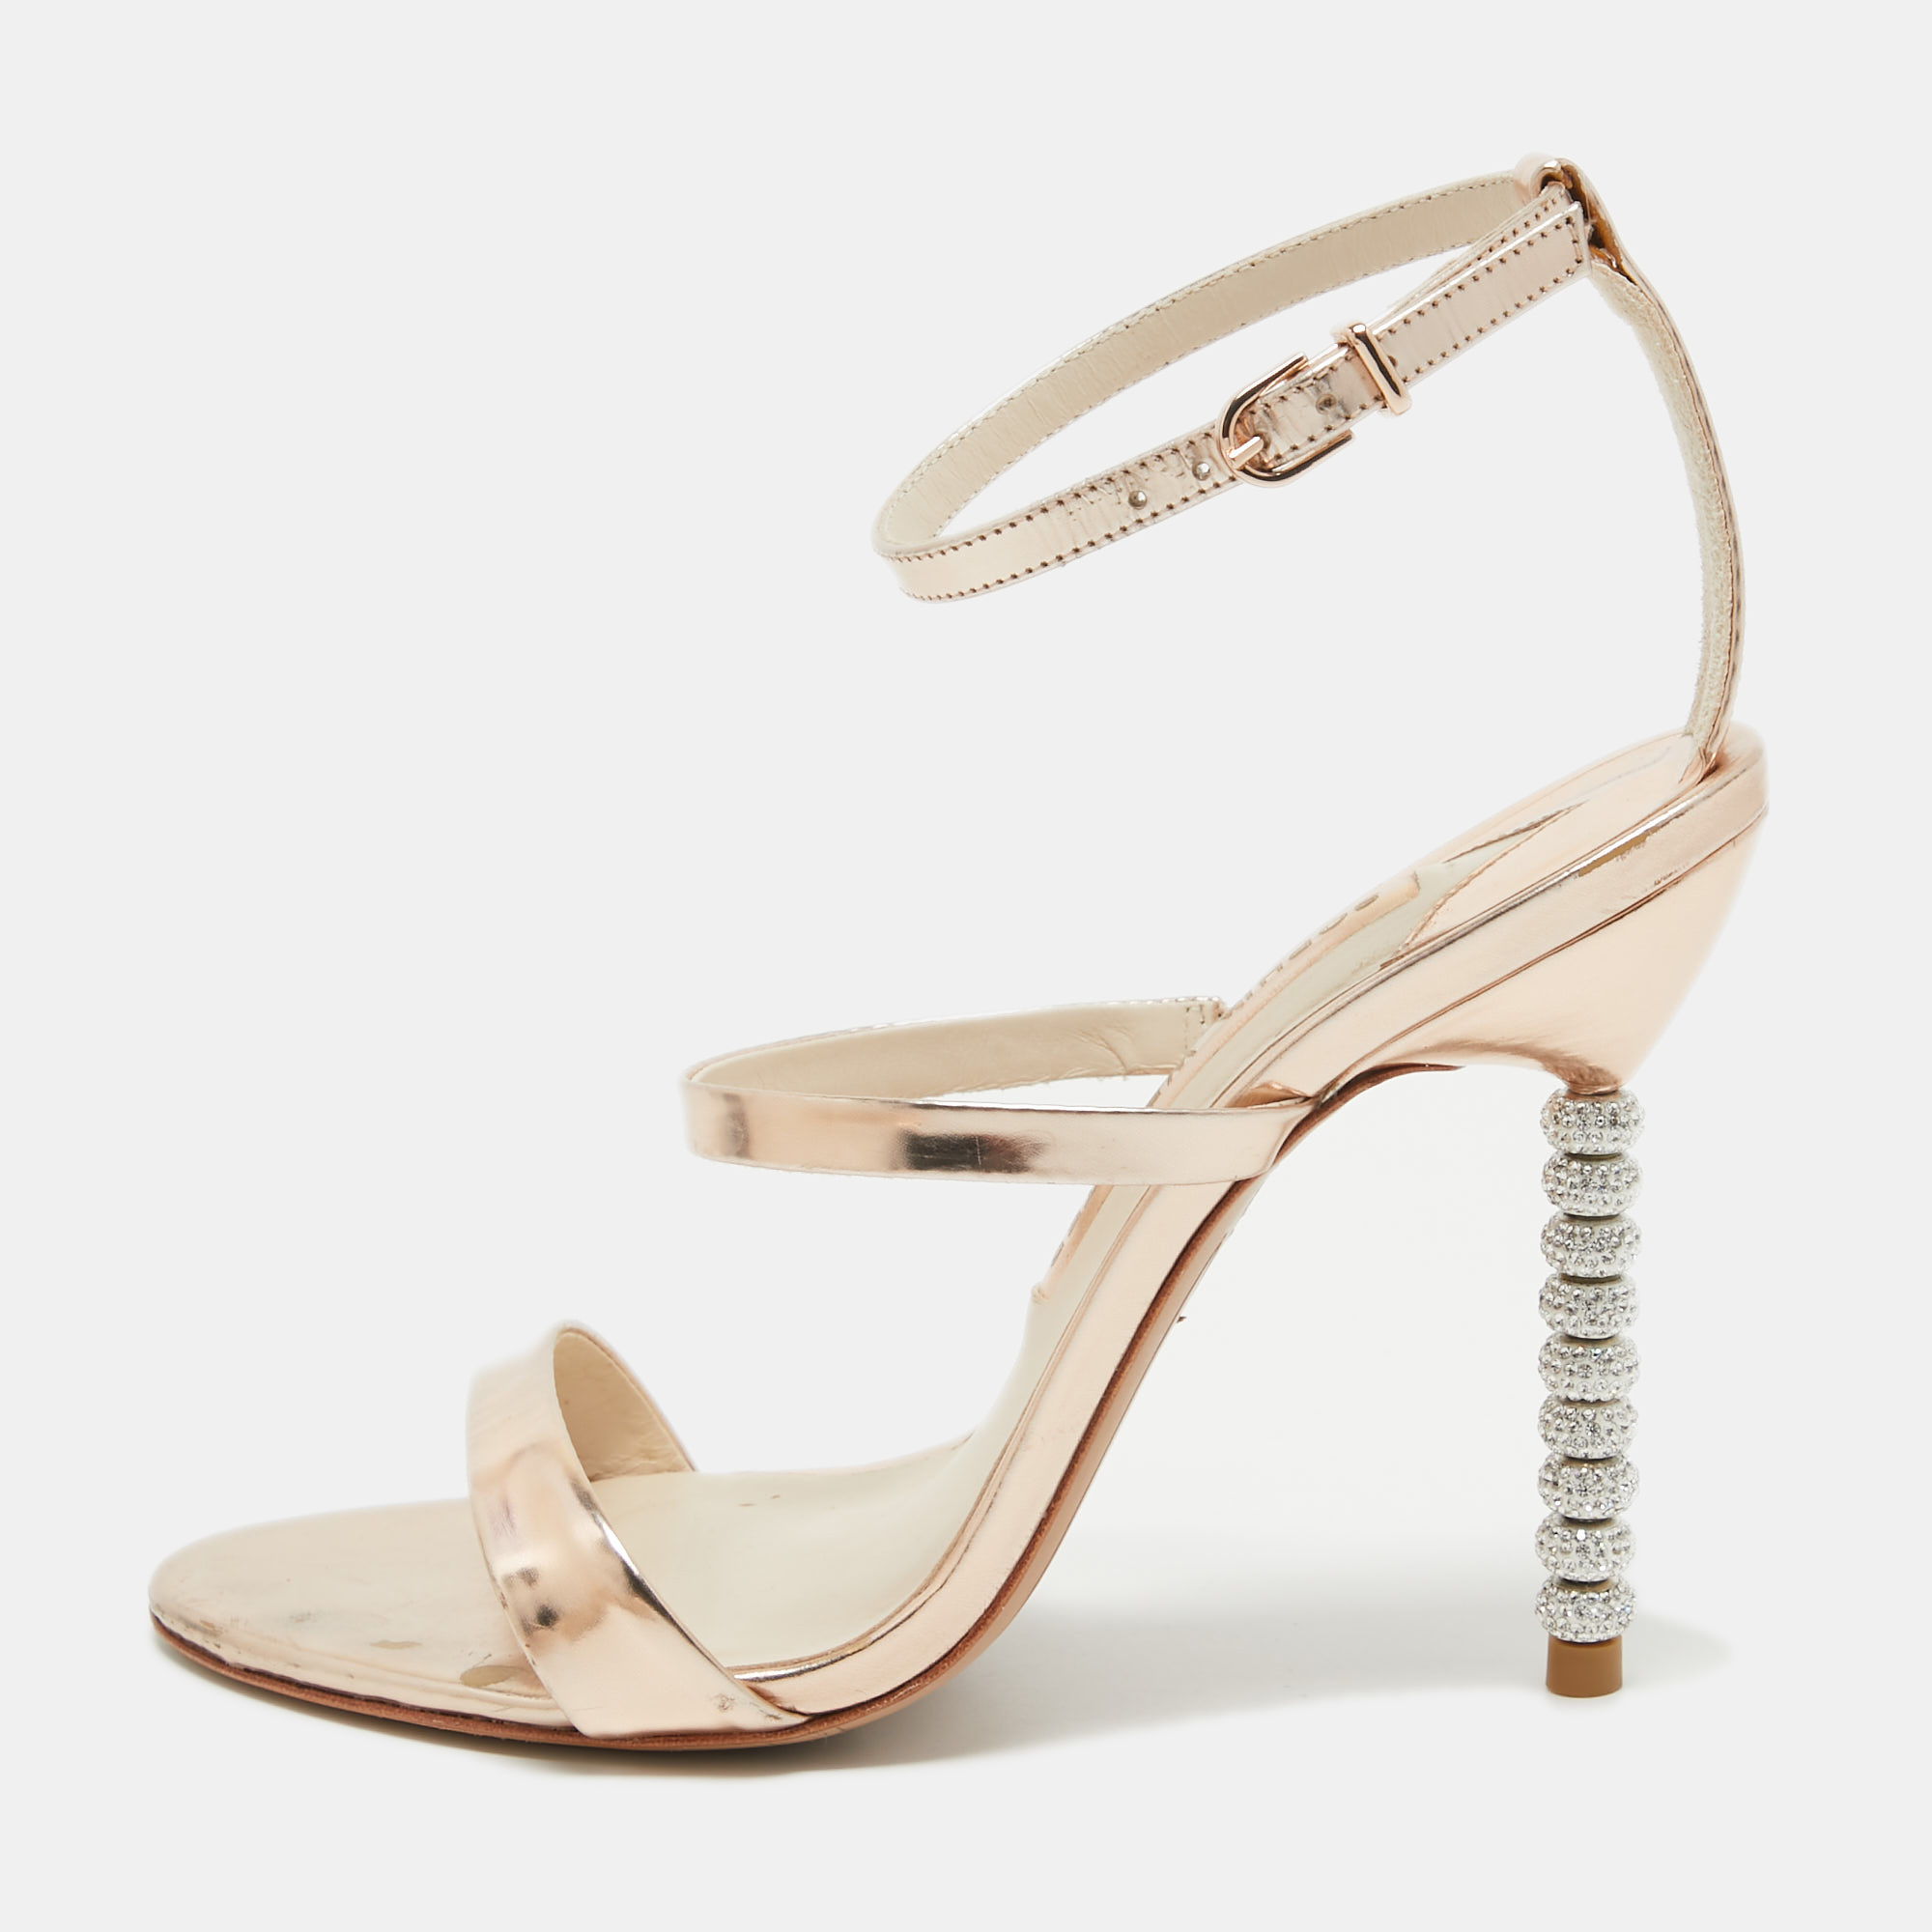 Sophia webster rose gold leather rosalind sandals size 37.5